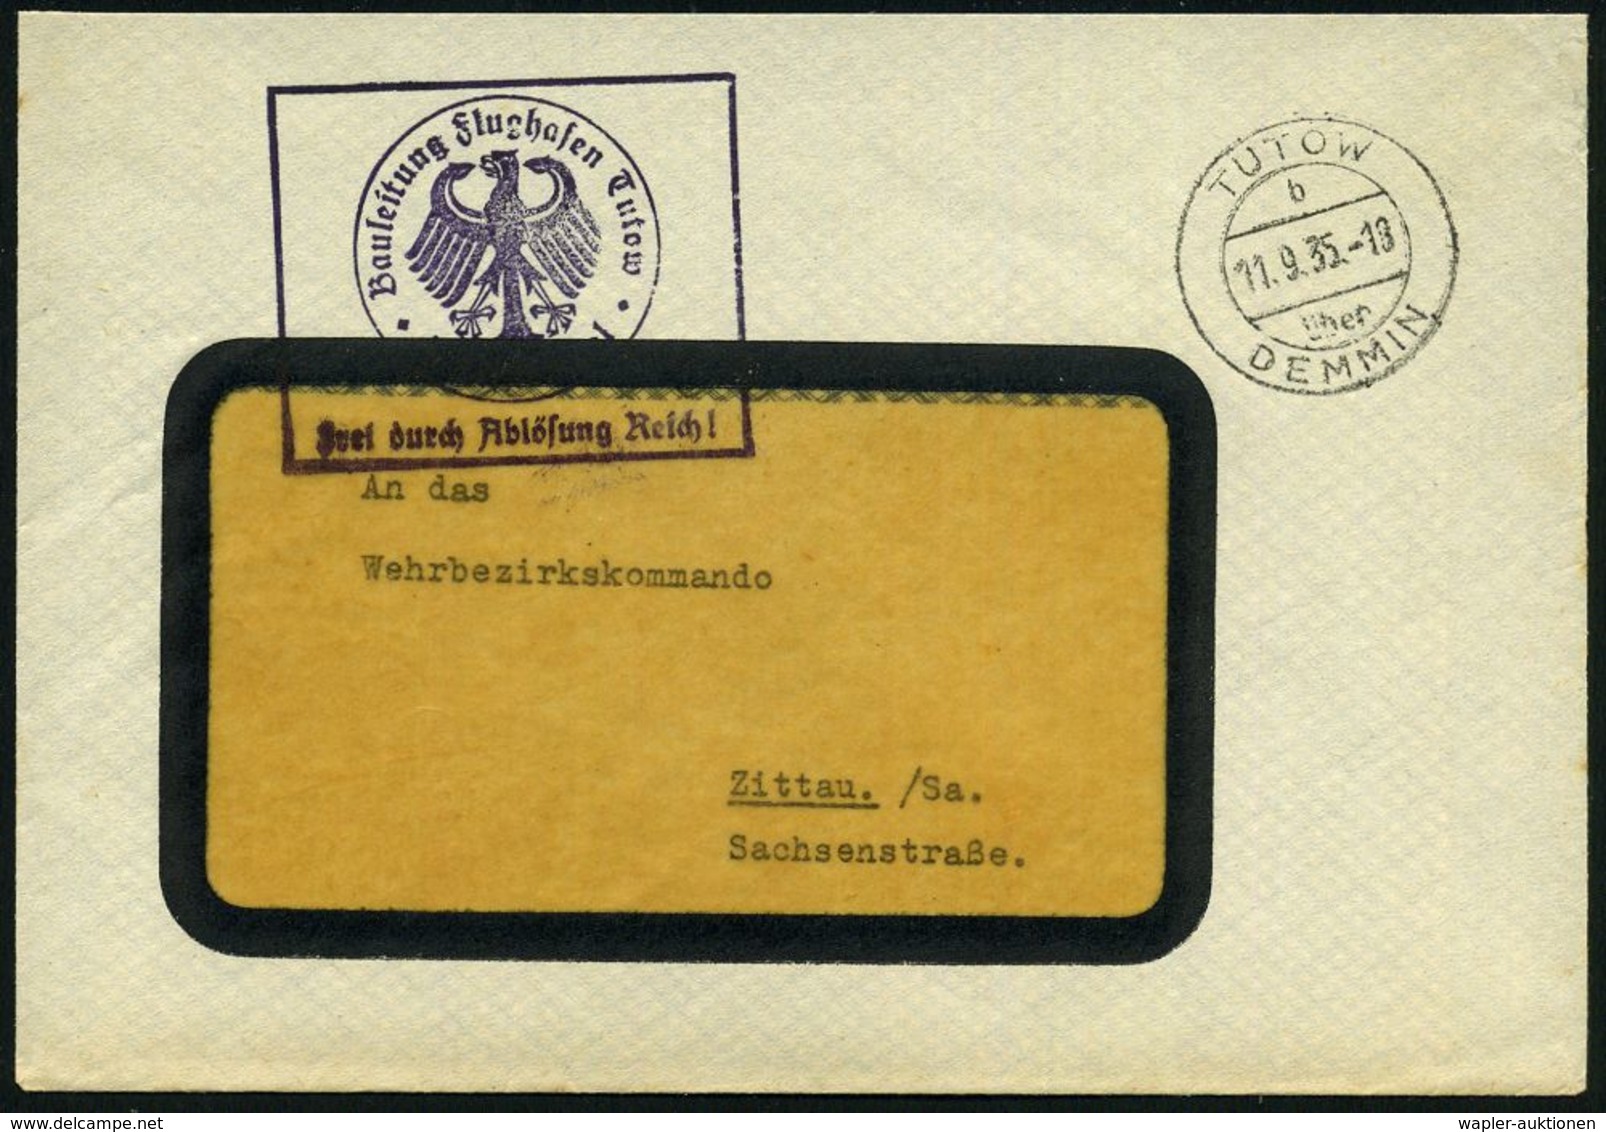 TUTOW/ B/ über/ DEMMIN 1935 (11.9.) 2K-Steg = PSt. II + Viol. Ra.: Bauleitung Flughafen Tutow/FdAR, Noch Alter Weimarer  - Flugzeuge